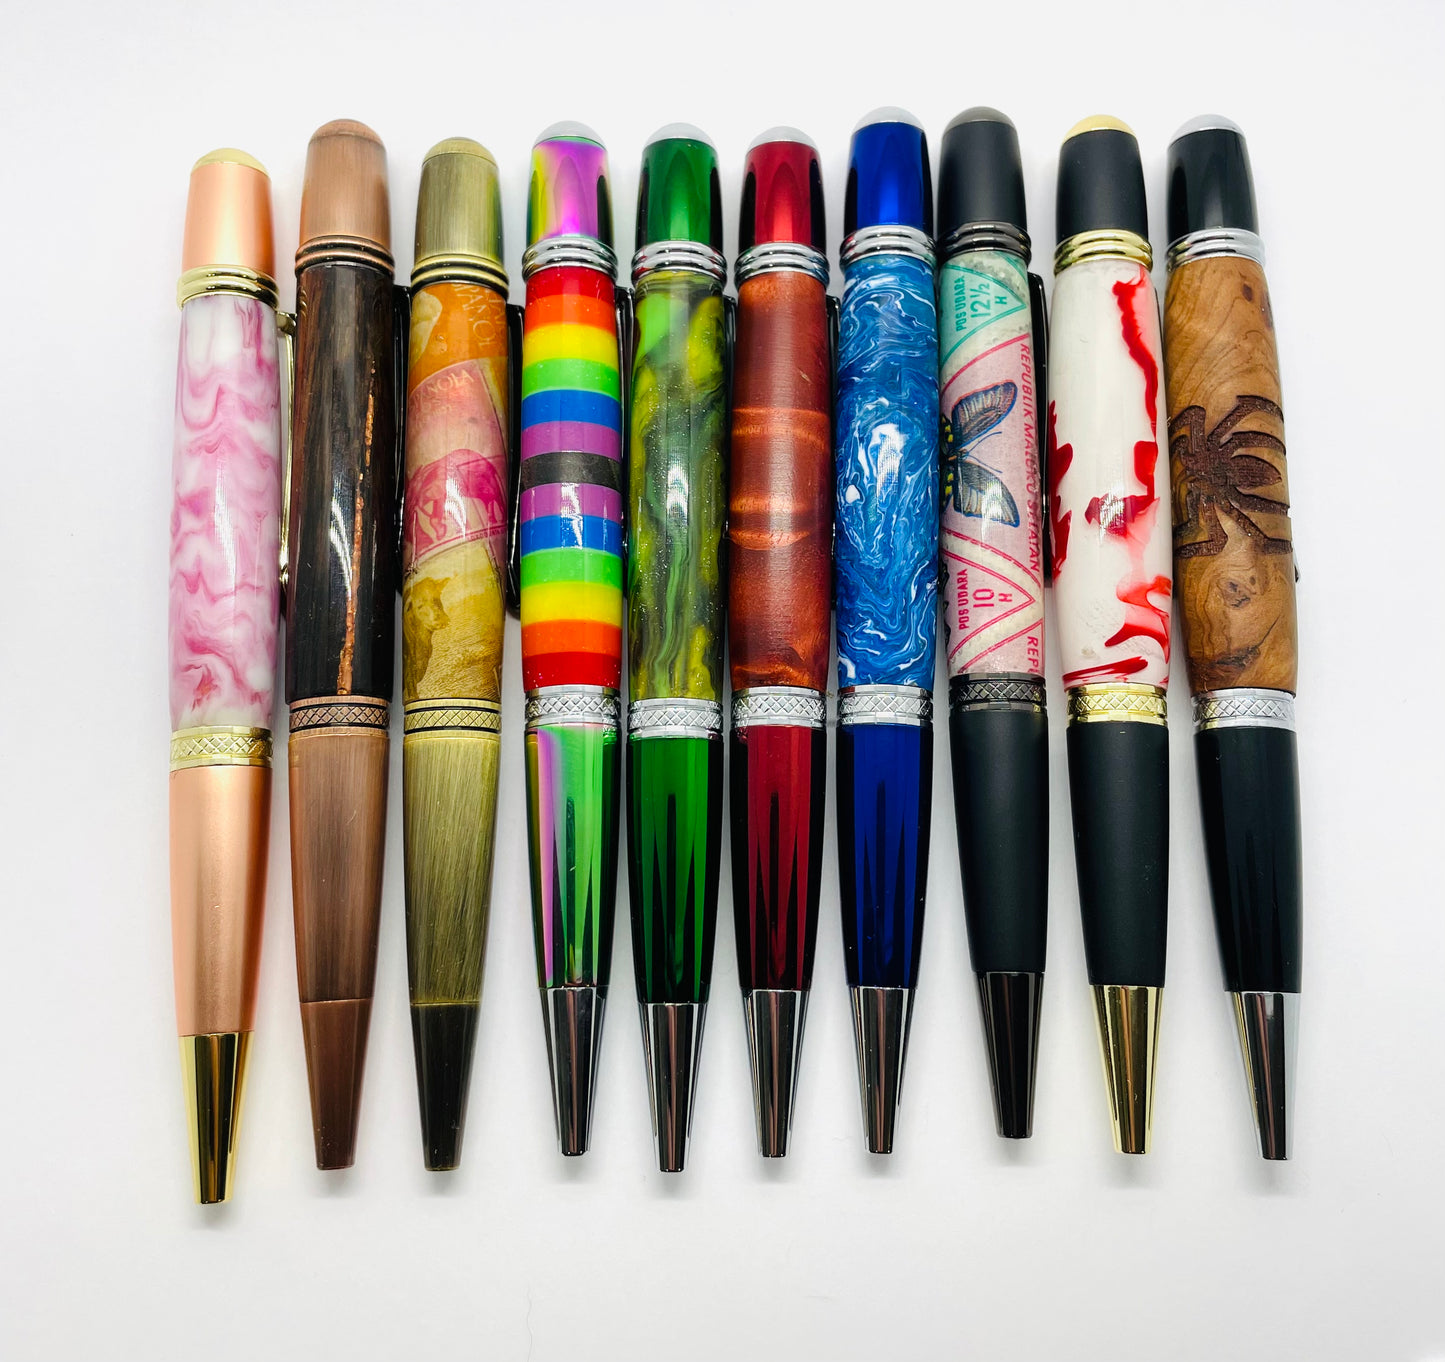 Monarch pen kit: Chrome & Blue